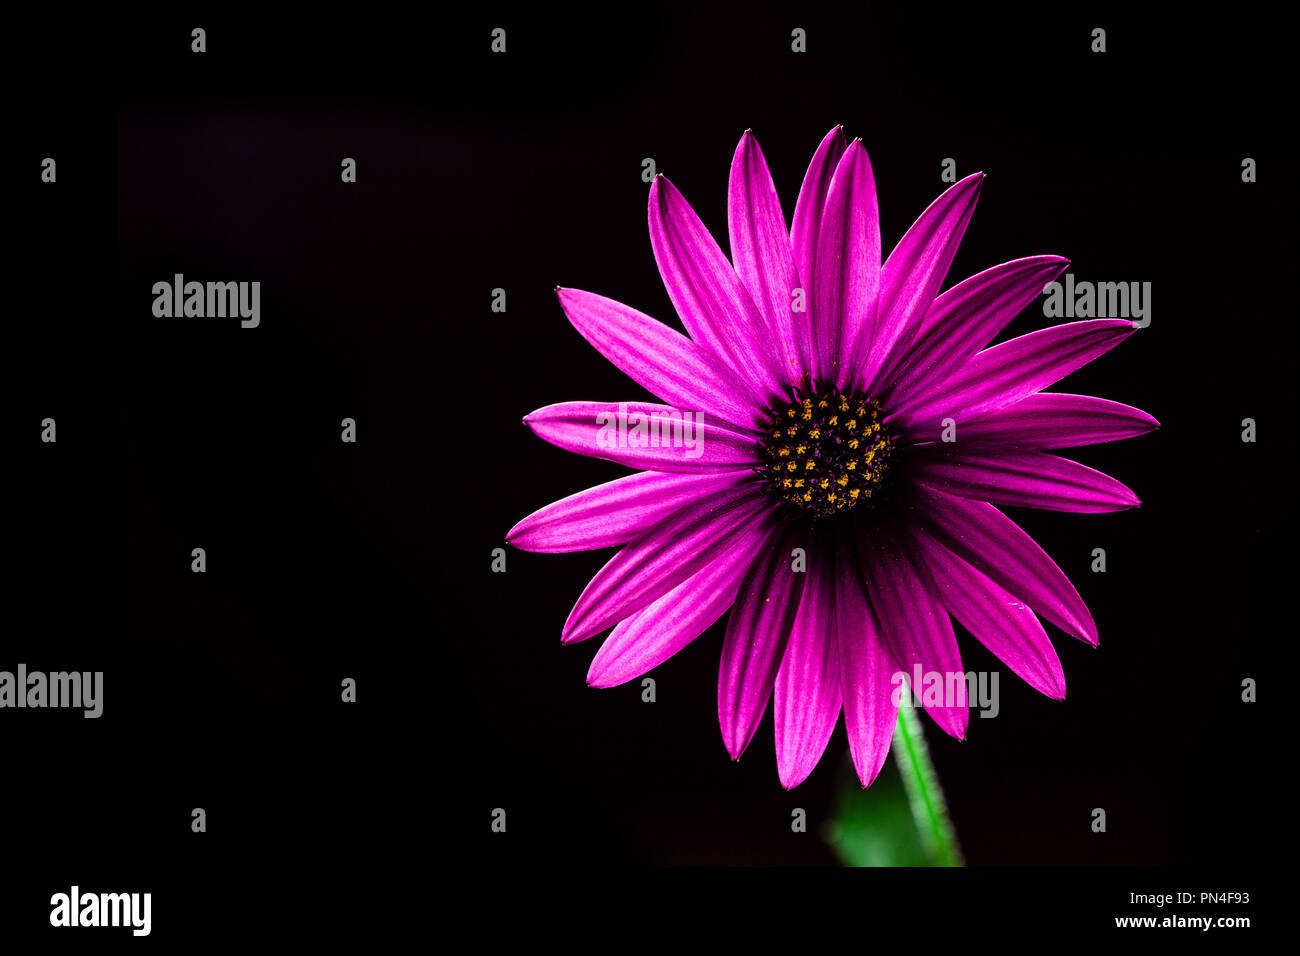 Purple flower daisy africains rougeoyant sur noir - studio shot with copy space Banque D'Images